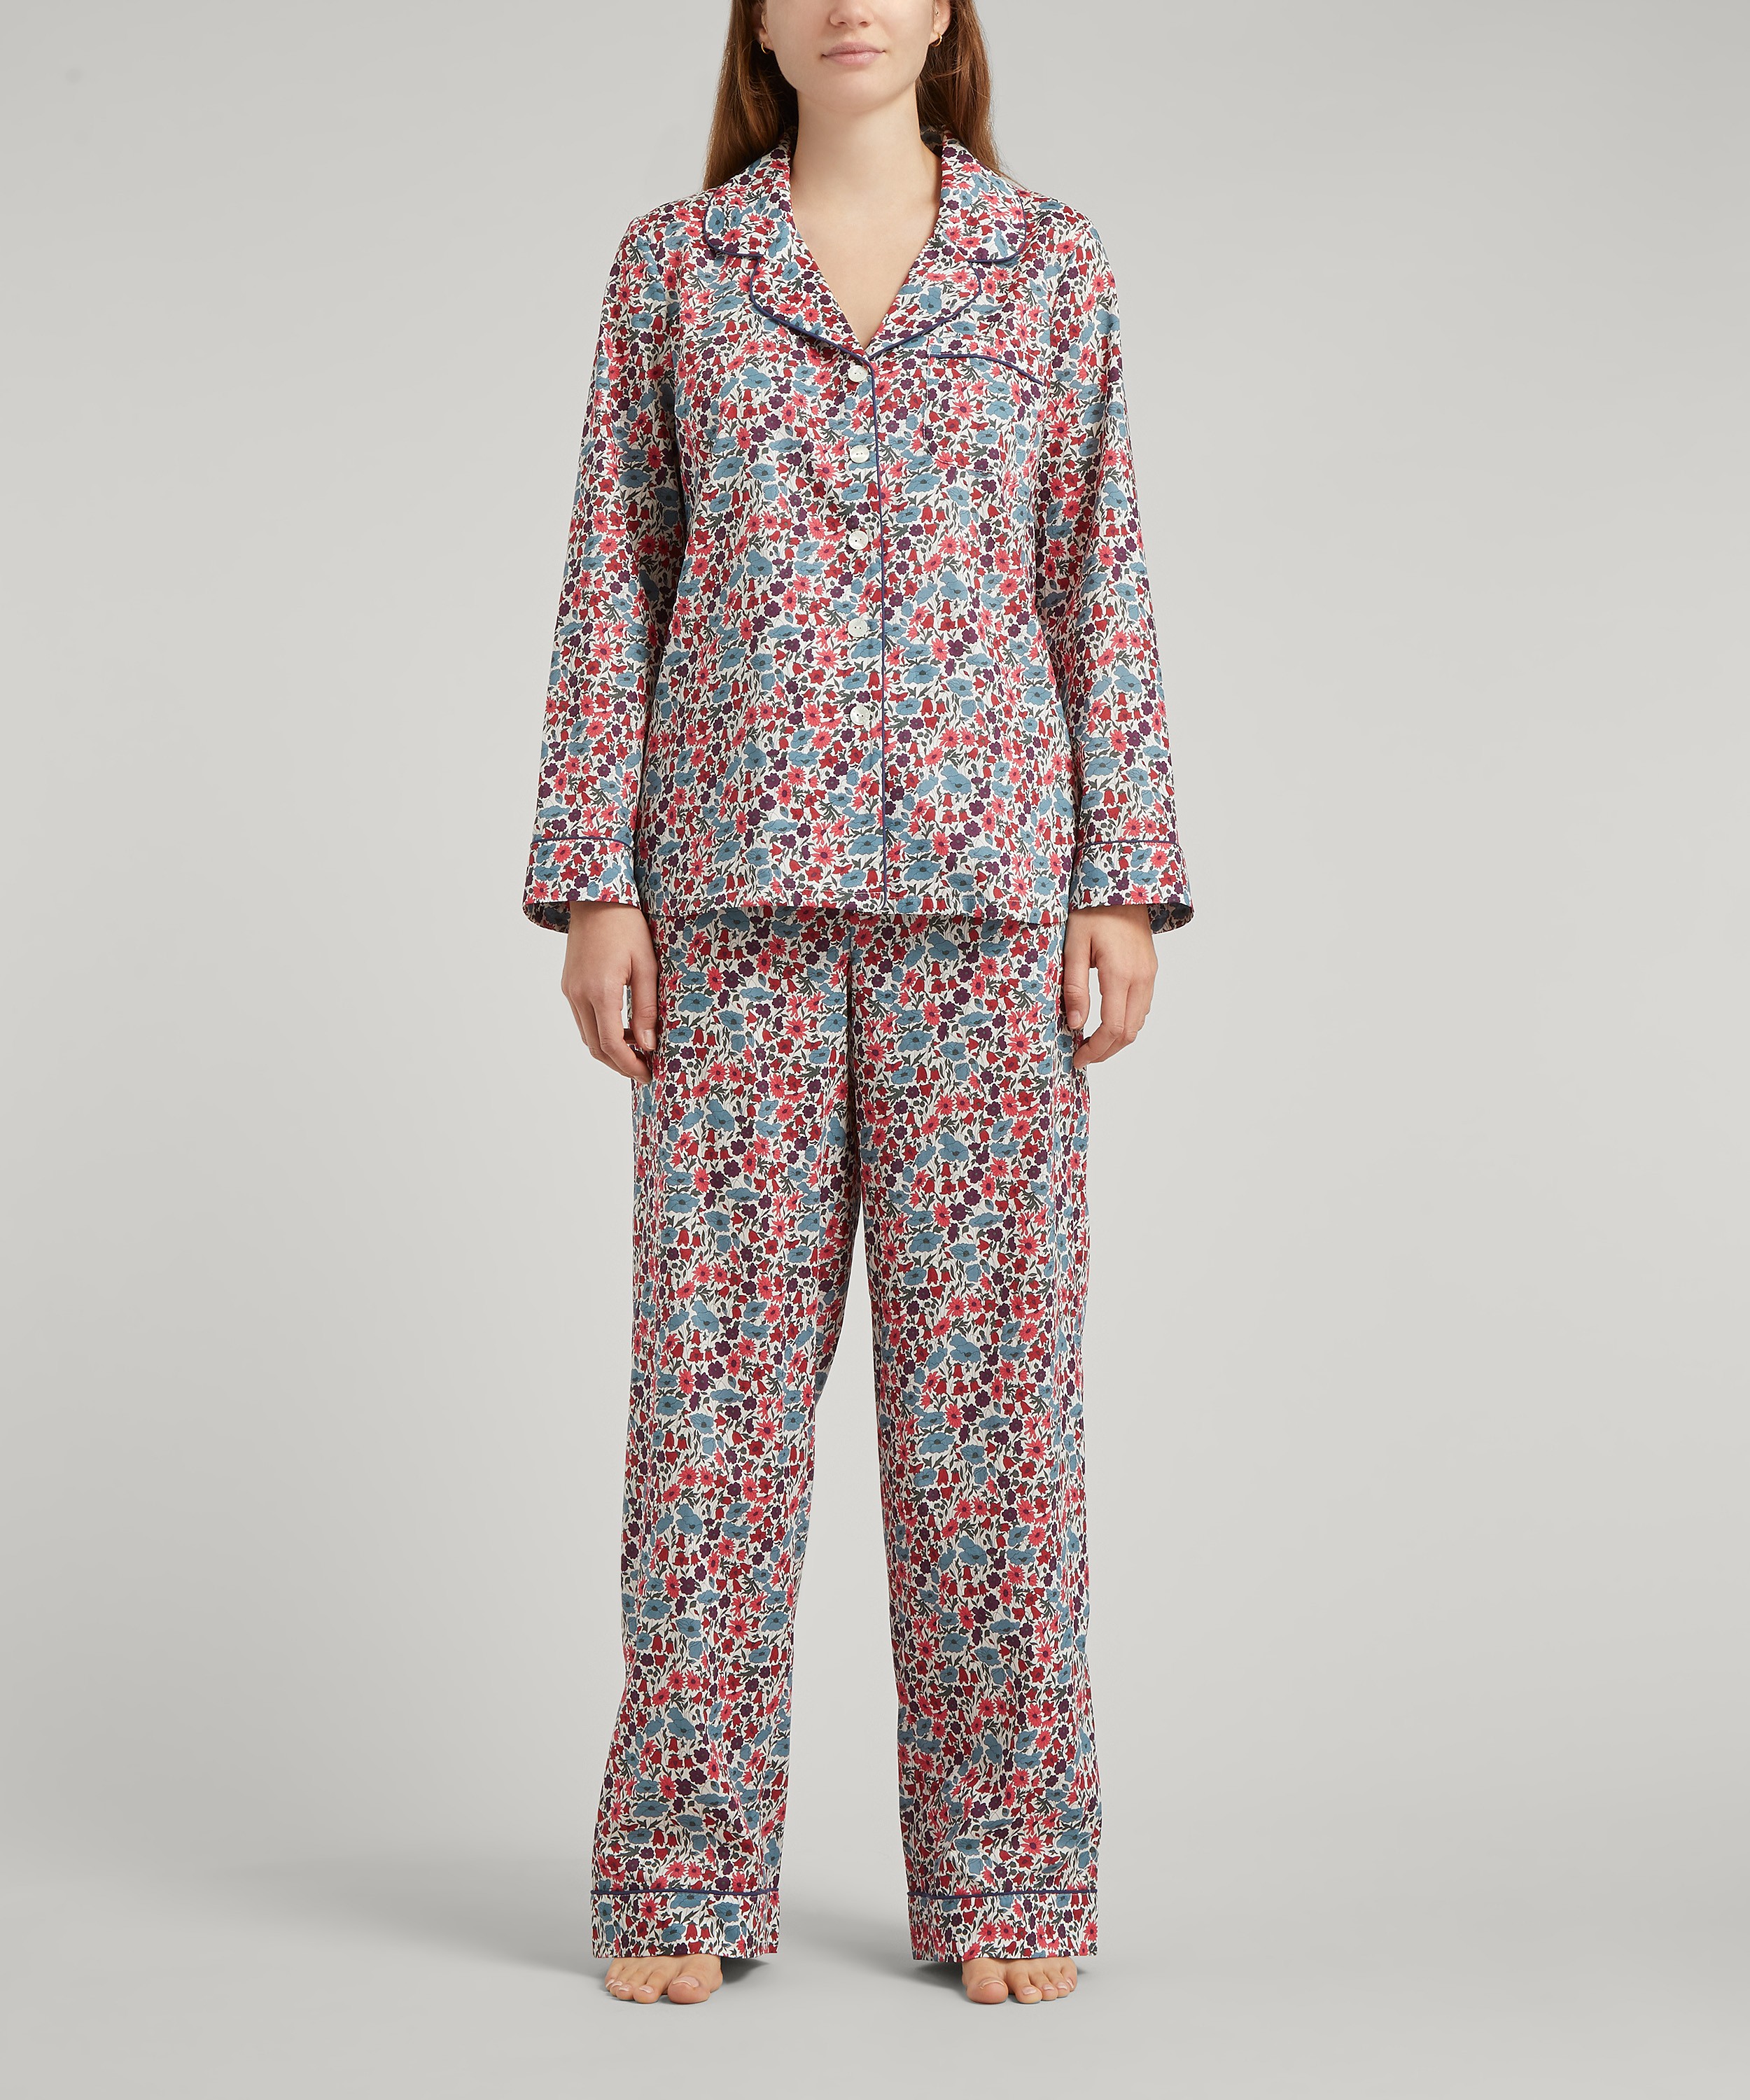 Liberty Women's Lindsay Garden Tana Lawn Cotton Pyjama Set